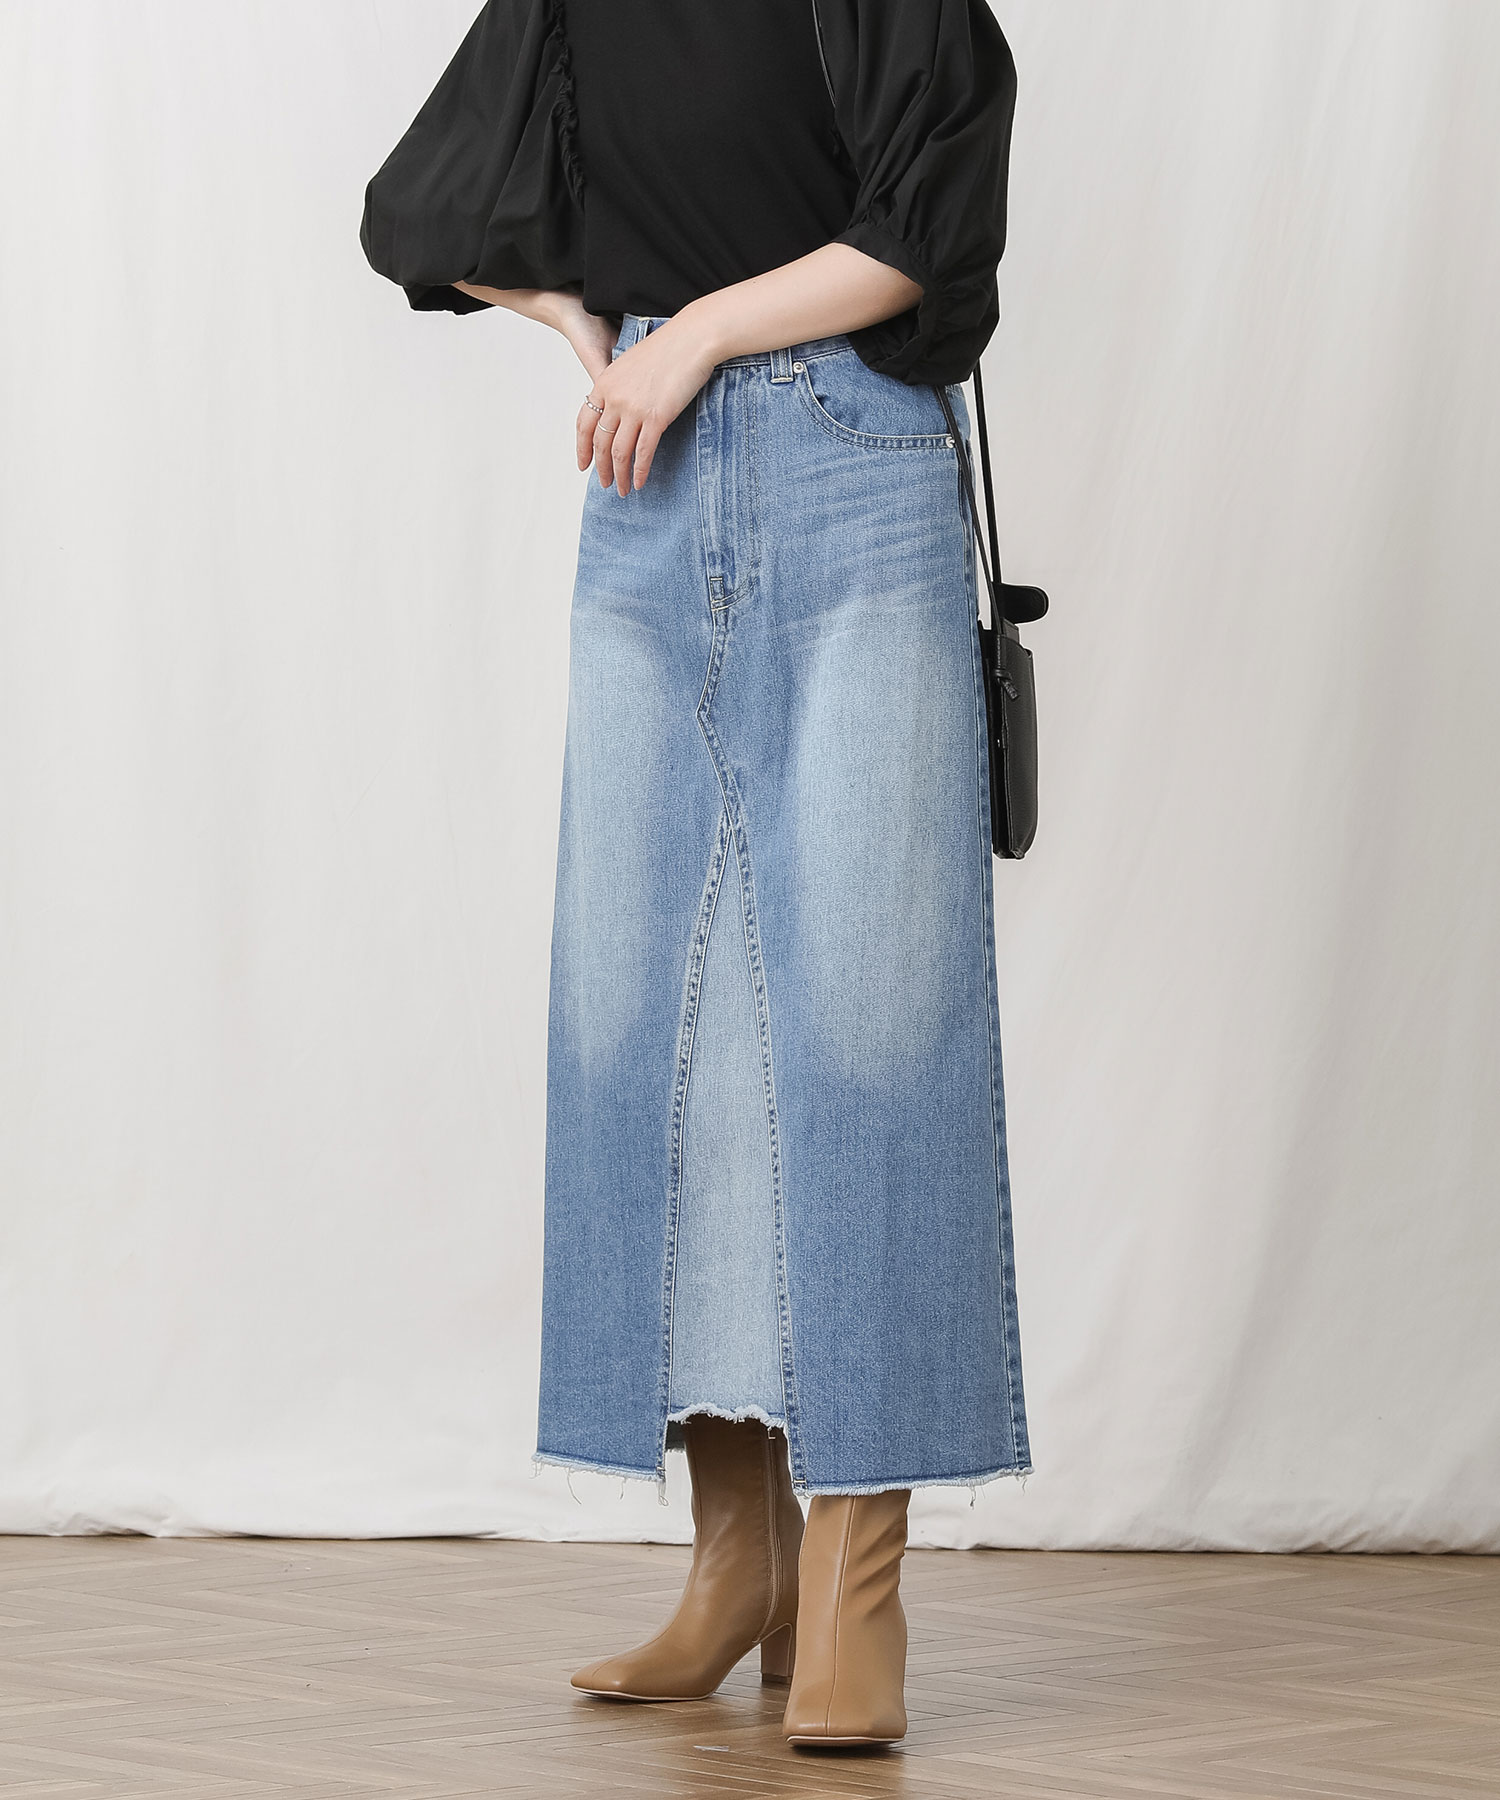 サイズ150sale‼️GU ガールズスカート